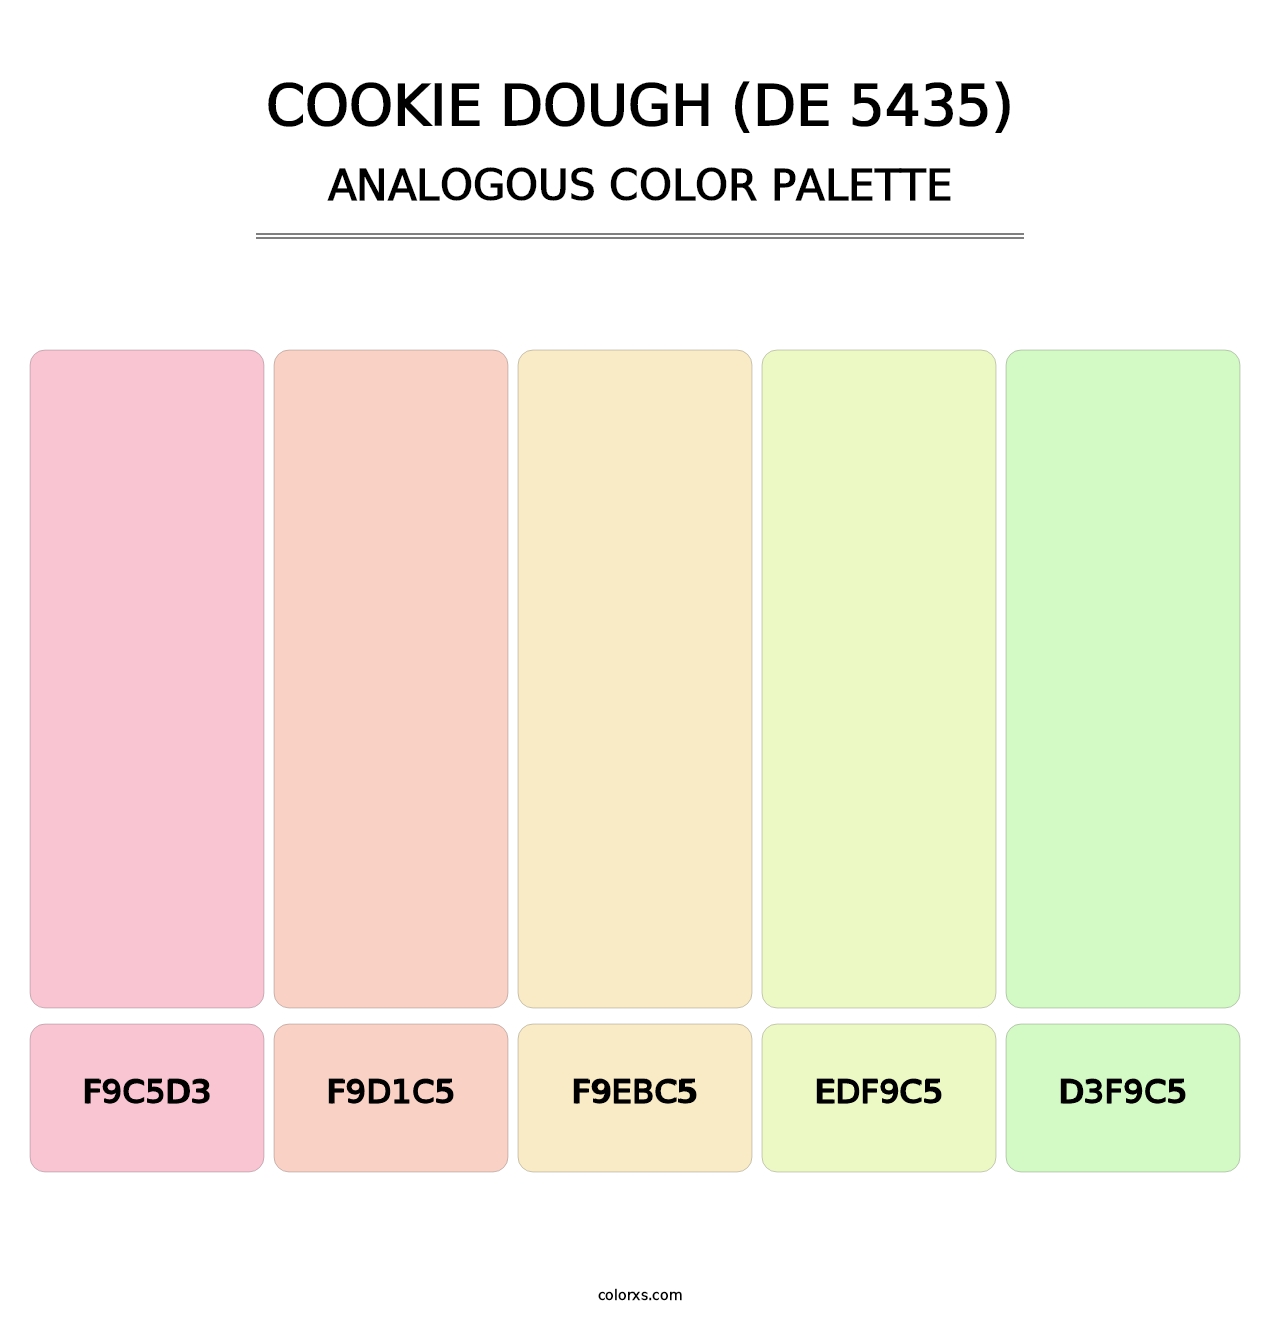 Cookie Dough (DE 5435) - Analogous Color Palette